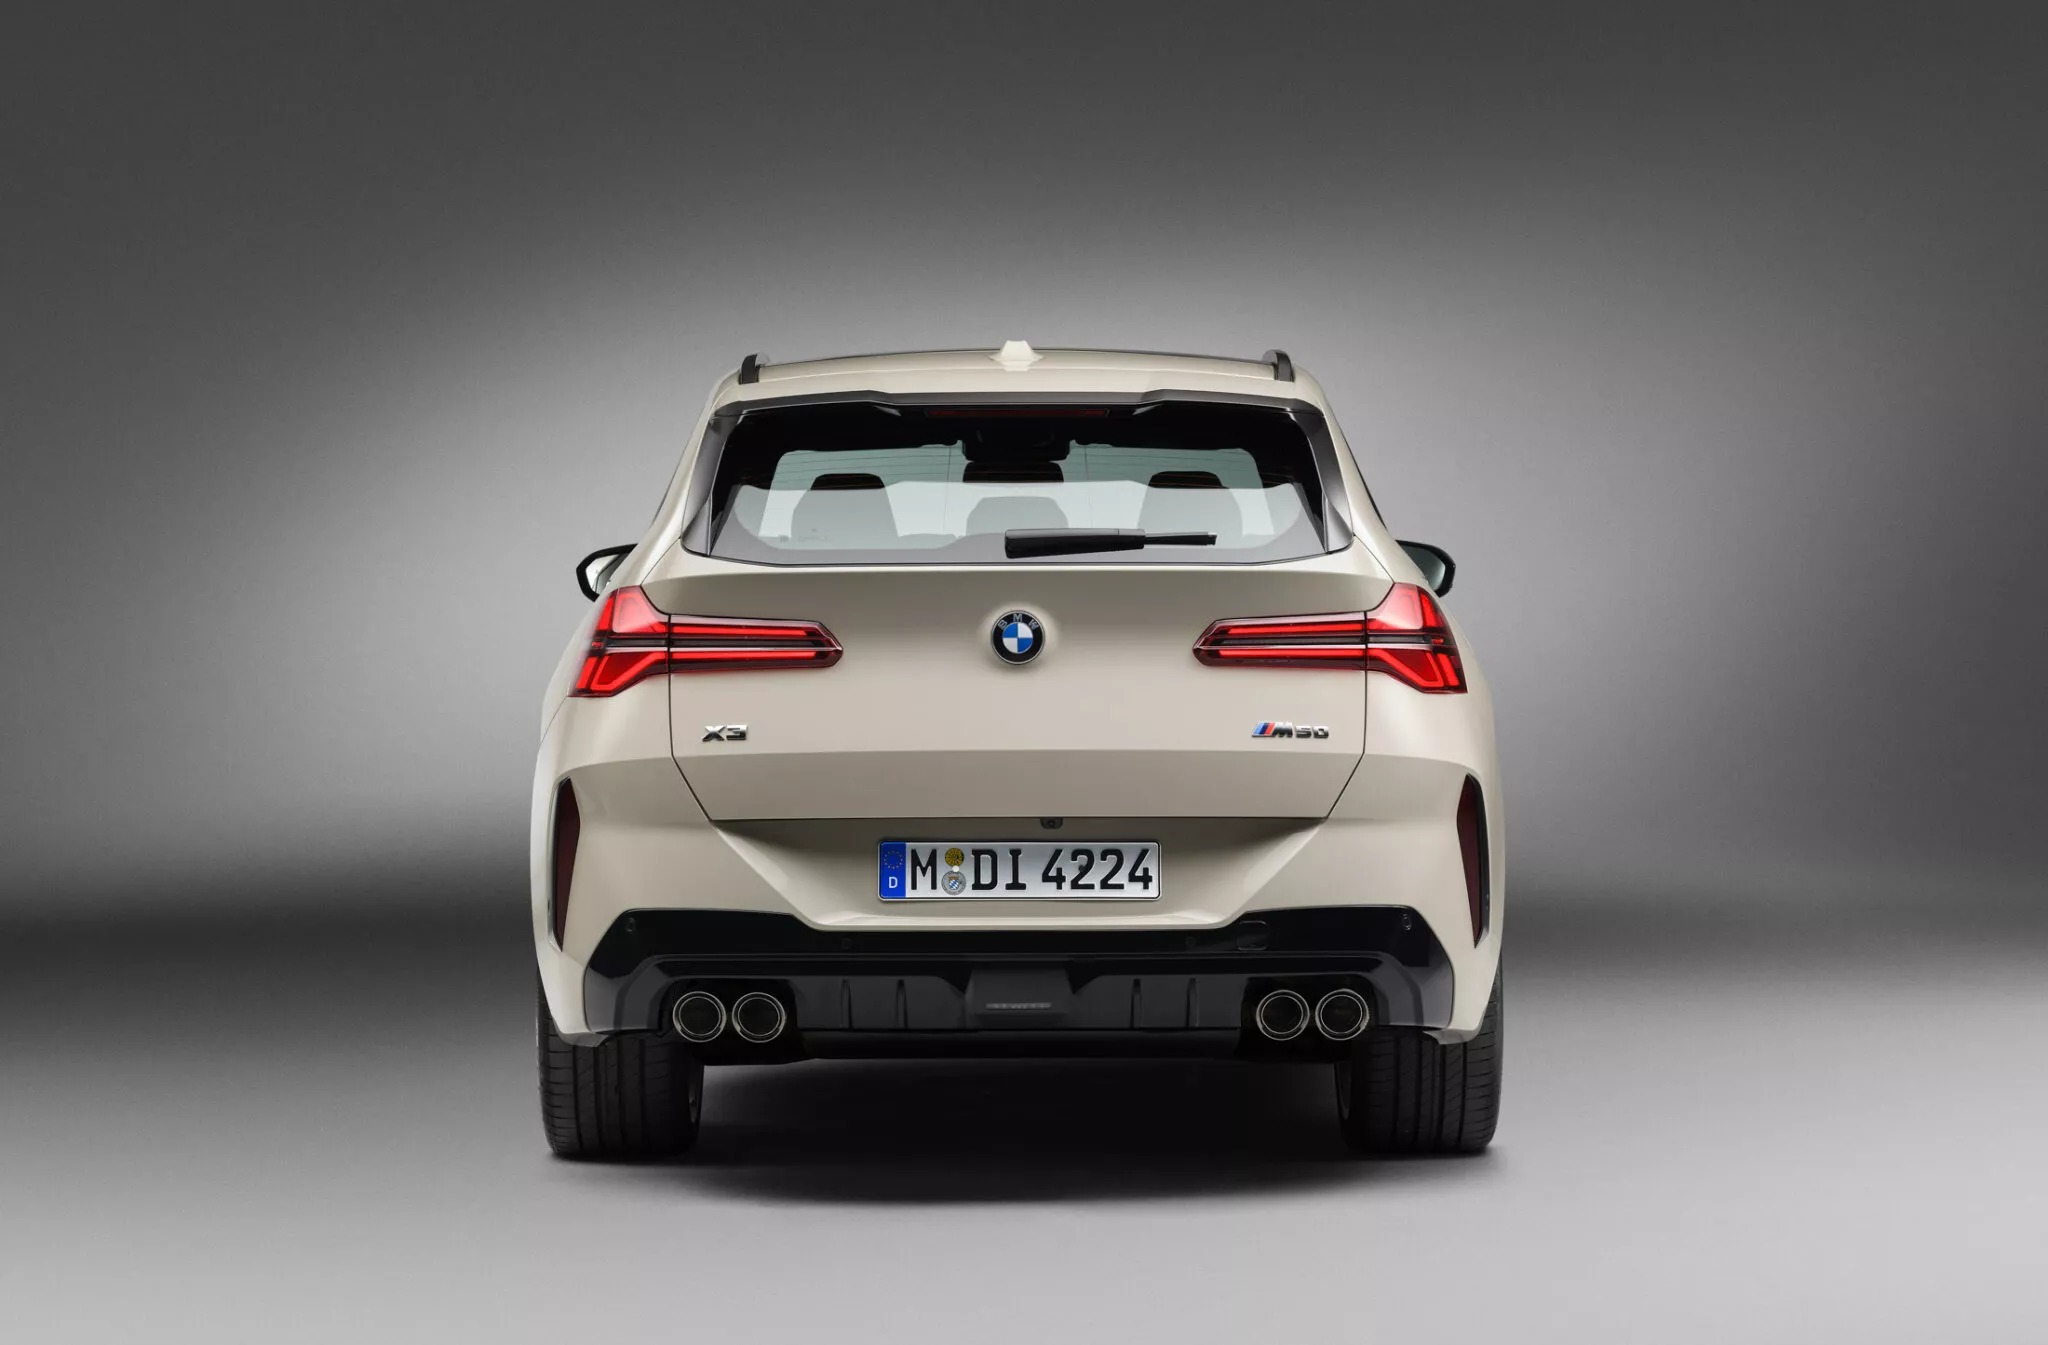 BMW X3 2025 ra mắt: Giá quy đổi từ hơn 1,2 tỷ đồng, thiết kế lột xác, màn hình cong khủng, động cơ mới mạnh hơn đấu GLC- Ảnh 9.